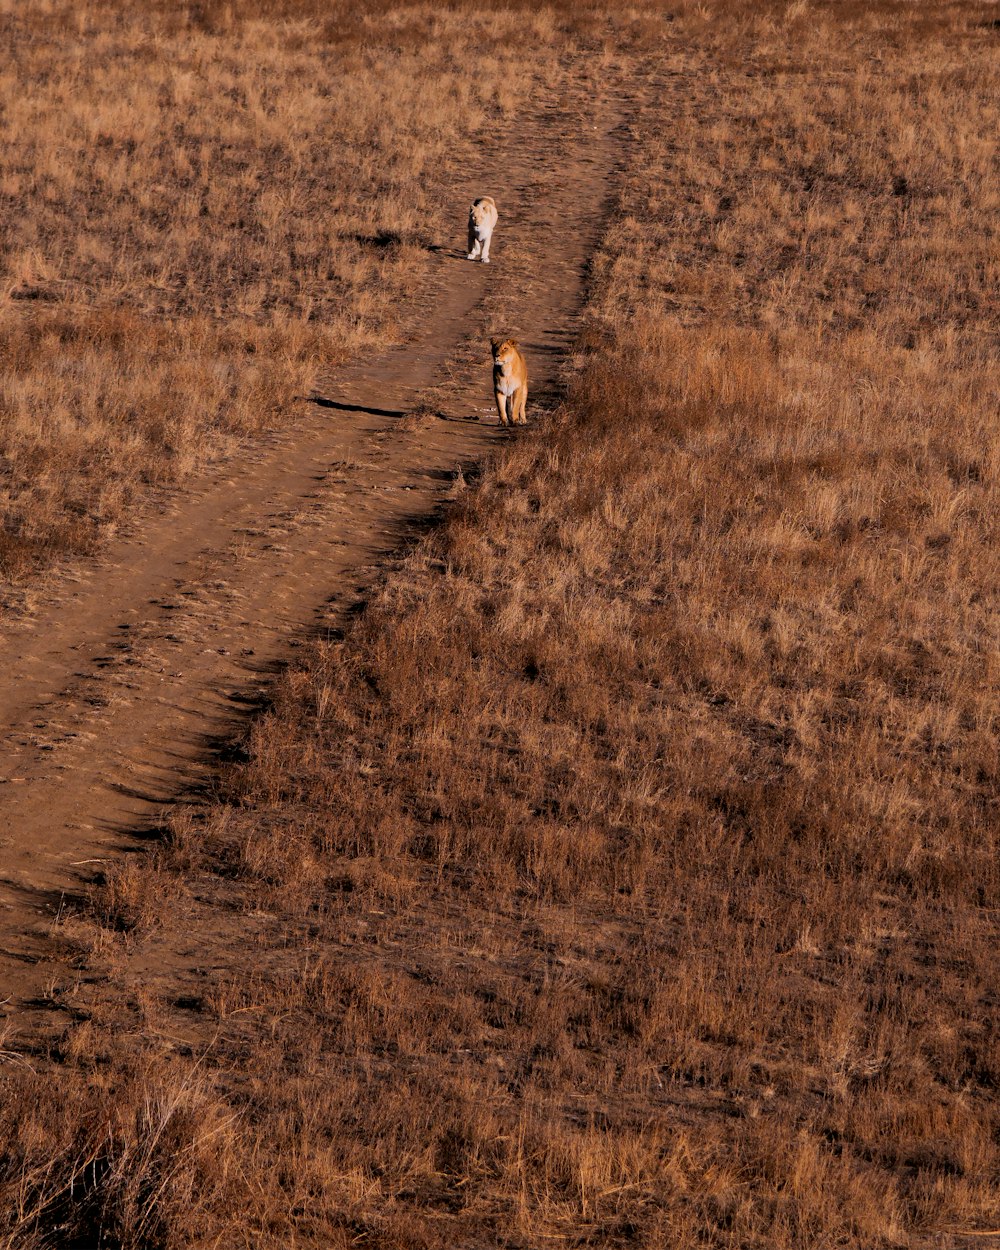 Un par de perros caminando por un camino de tierra